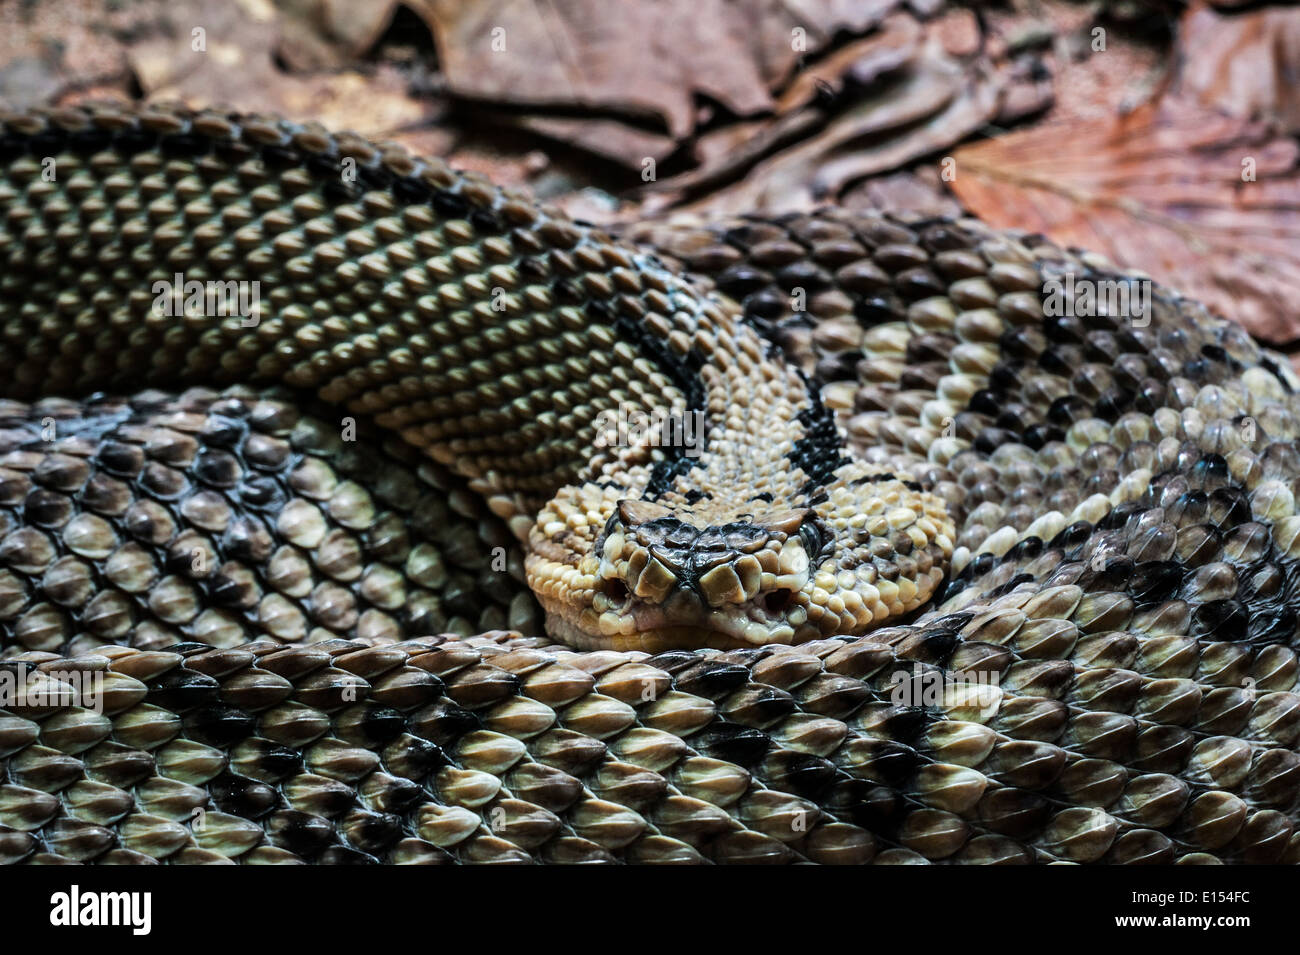 Noroeste Neotropical (serpientes de cascabel Crotalus culminatus / Crotalus simus culminatus) enrollados, venenosos pit viper, México Foto de stock